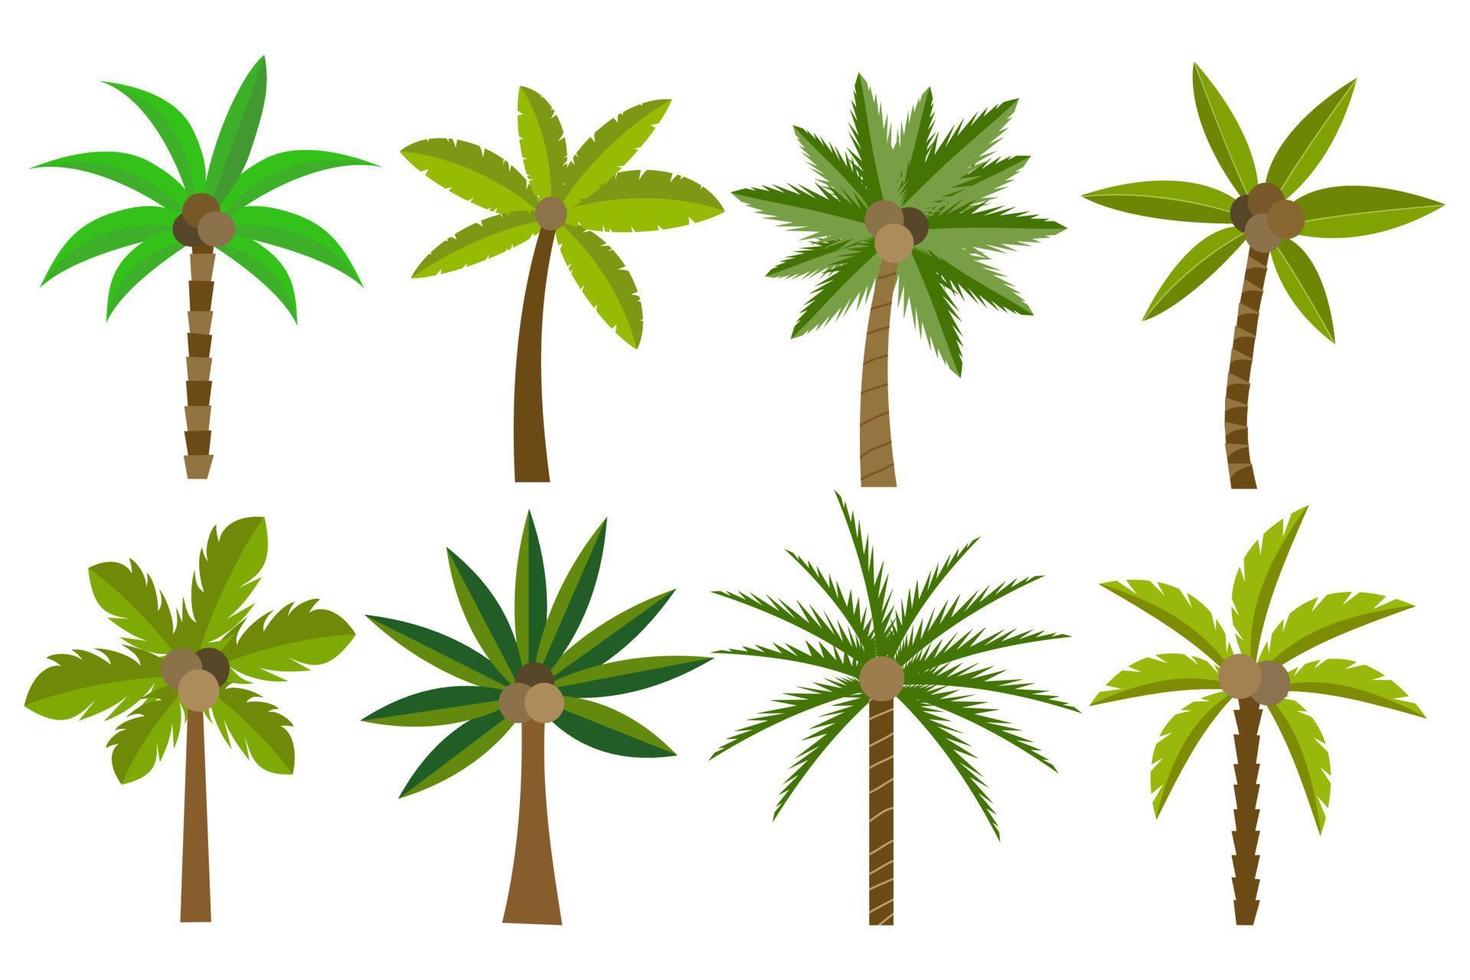 Sammlung von Symbolen für grüne Naturkokosnussbäume. kann verwendet werden, um jedes Thema der Natur oder eines gesunden Lebensstils zu veranschaulichen. vektor